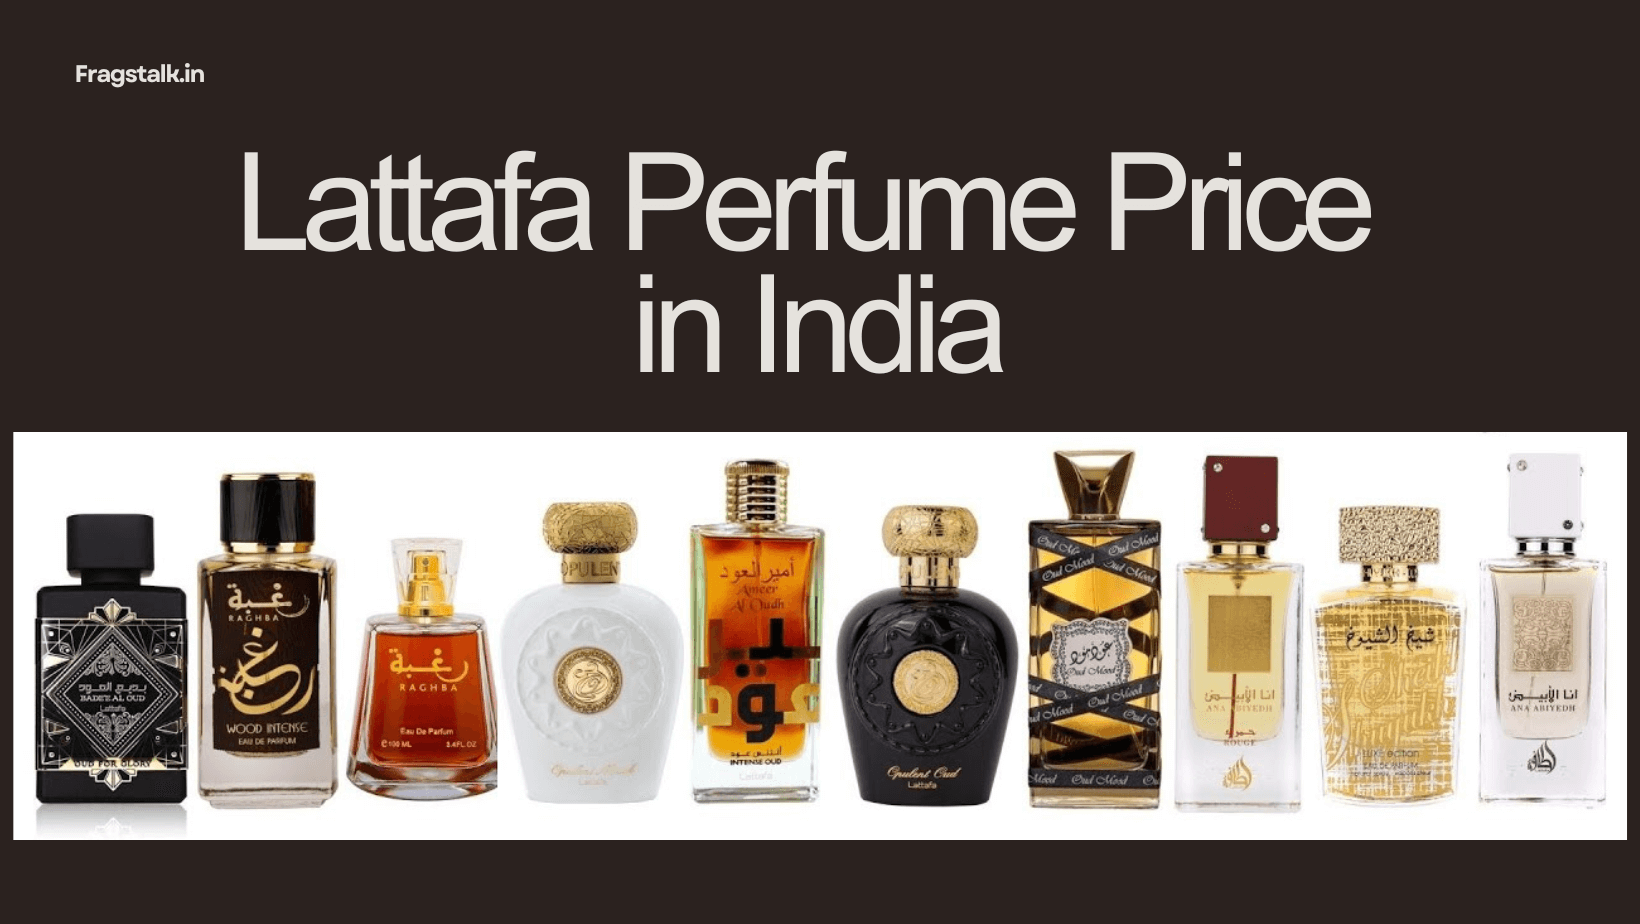 Lattafa perfume price in India